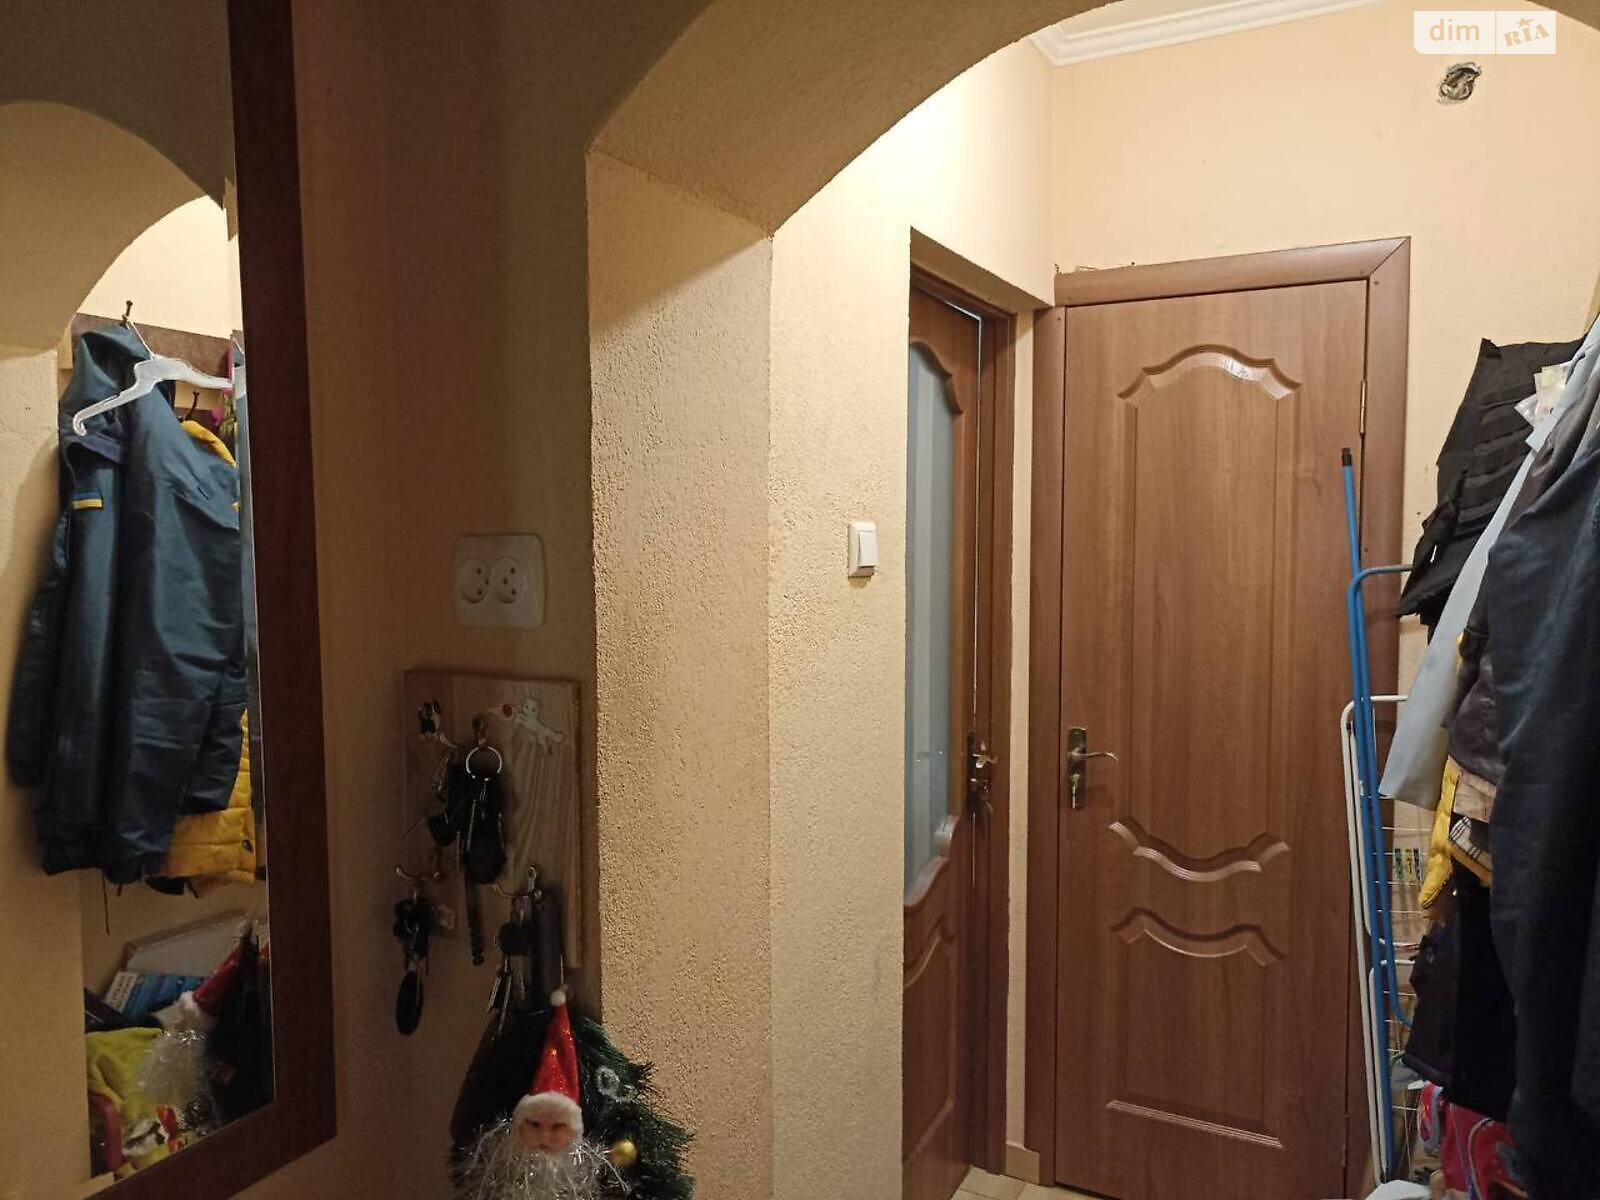 Продажа части дома в Ужгороде, улица Полонинская, район Пьяный базар, 2 комнаты фото 1